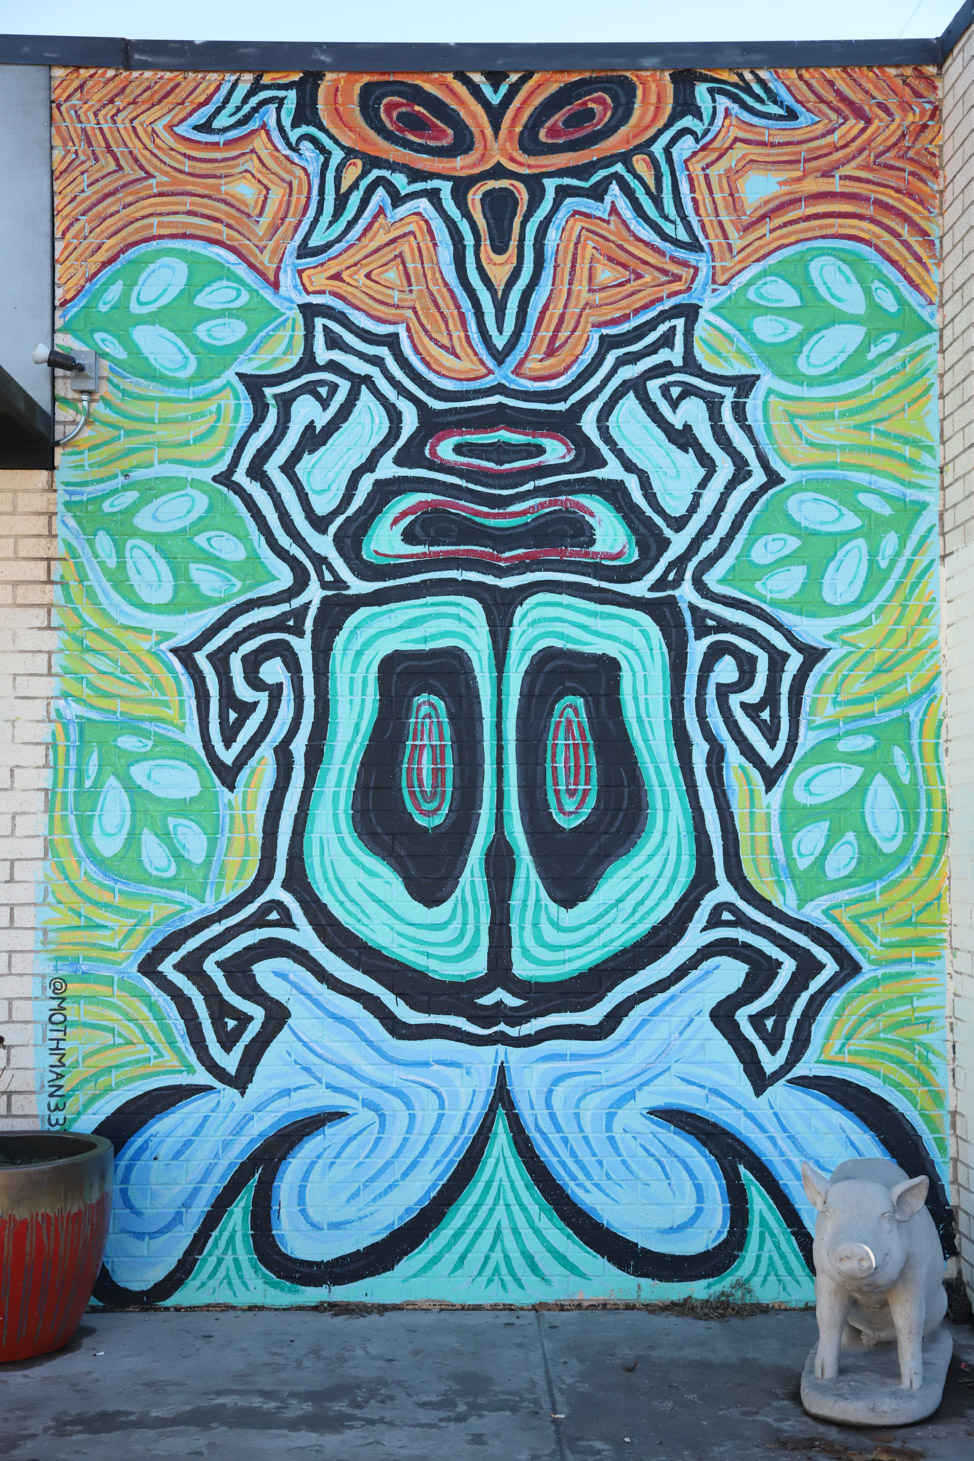 Mural at Guyutes in Oklahoma City